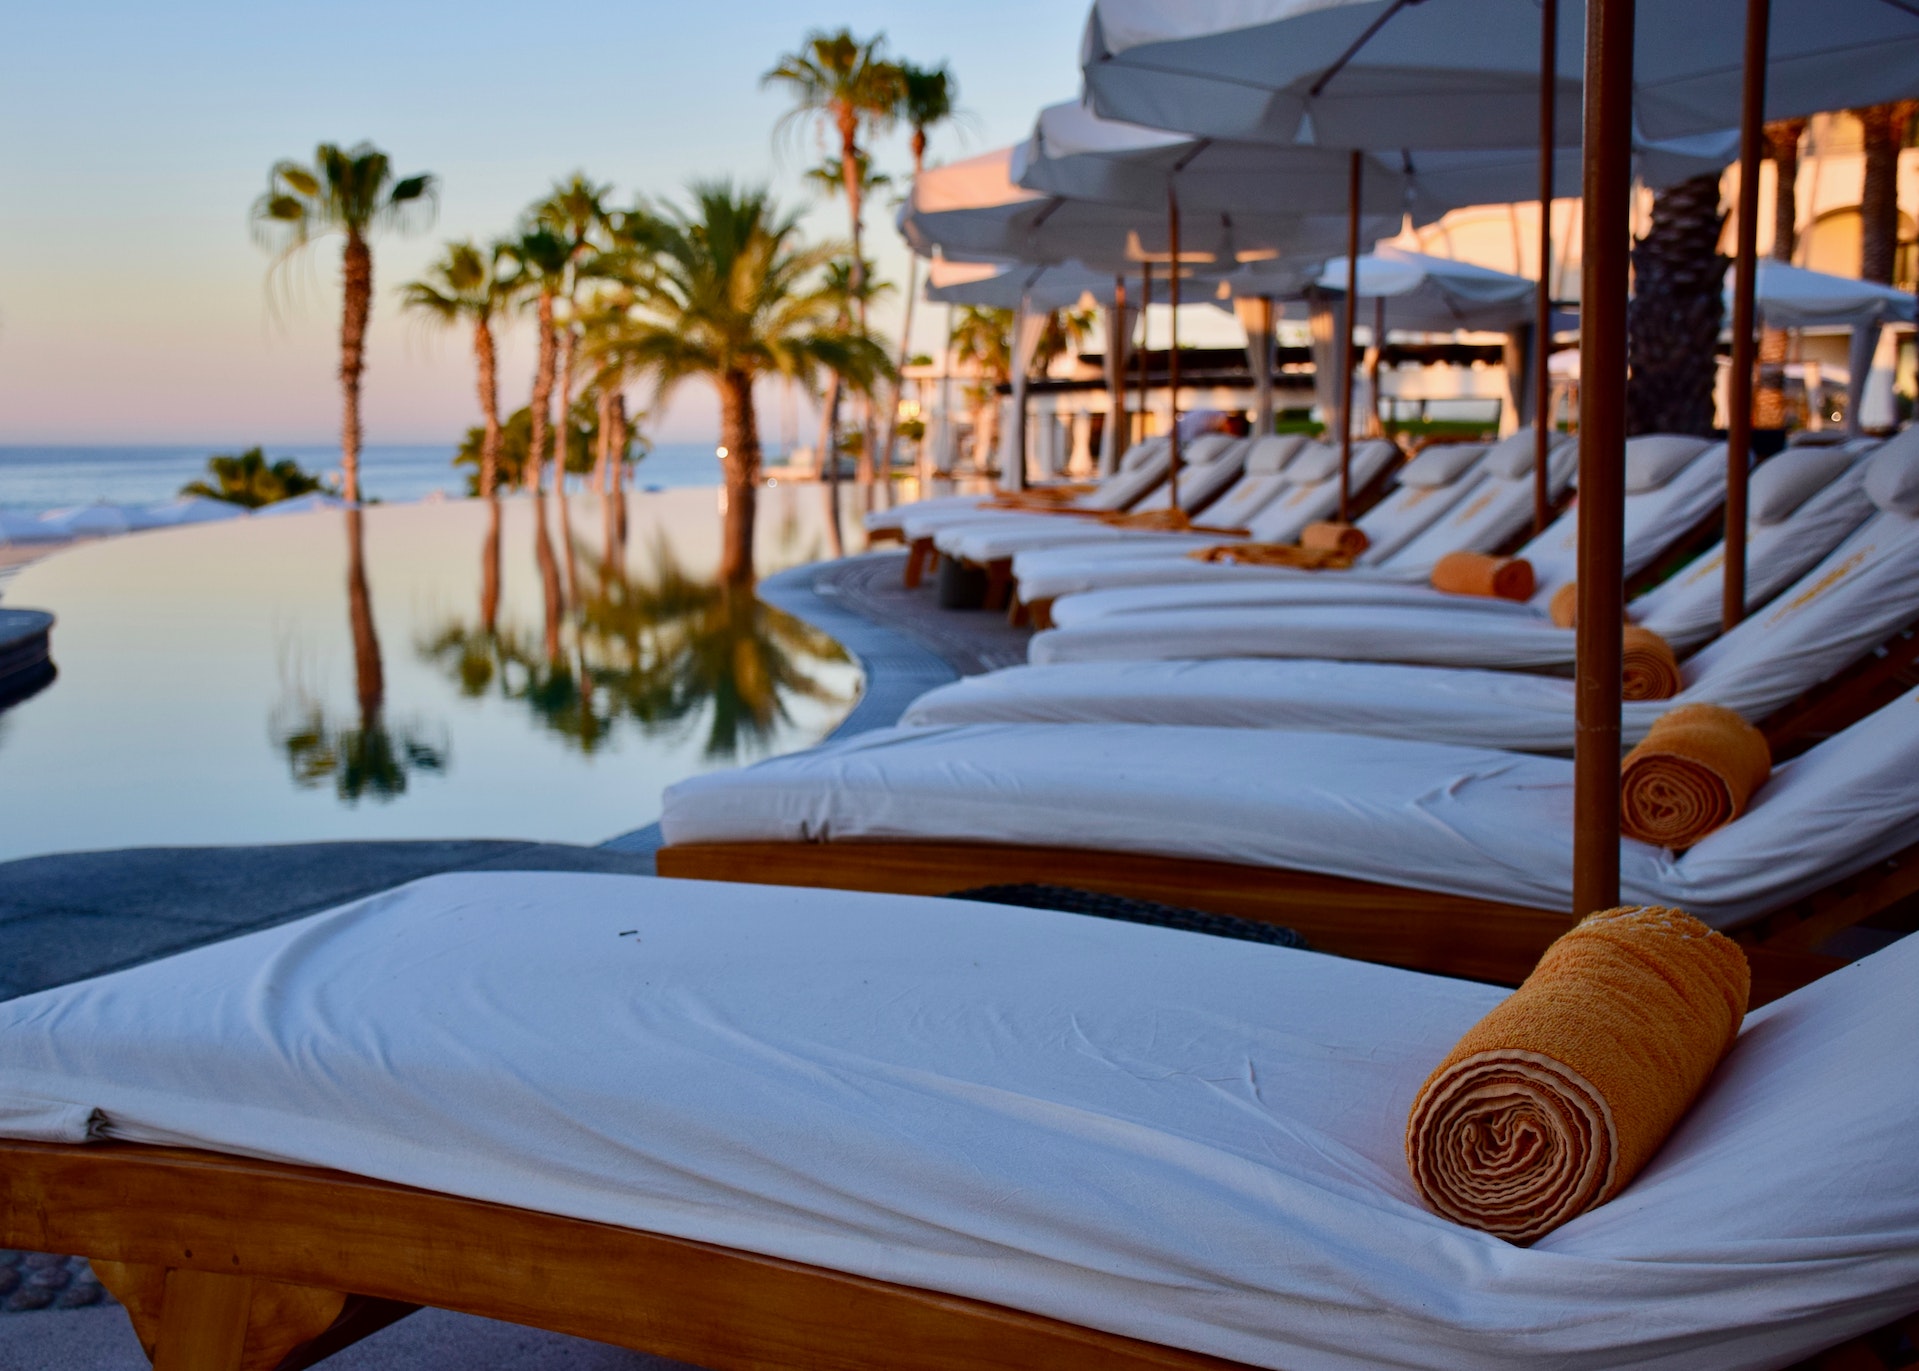 Garza Blanca Resort & Spa Los Cabos - A Luxurious Getaway In Mexico